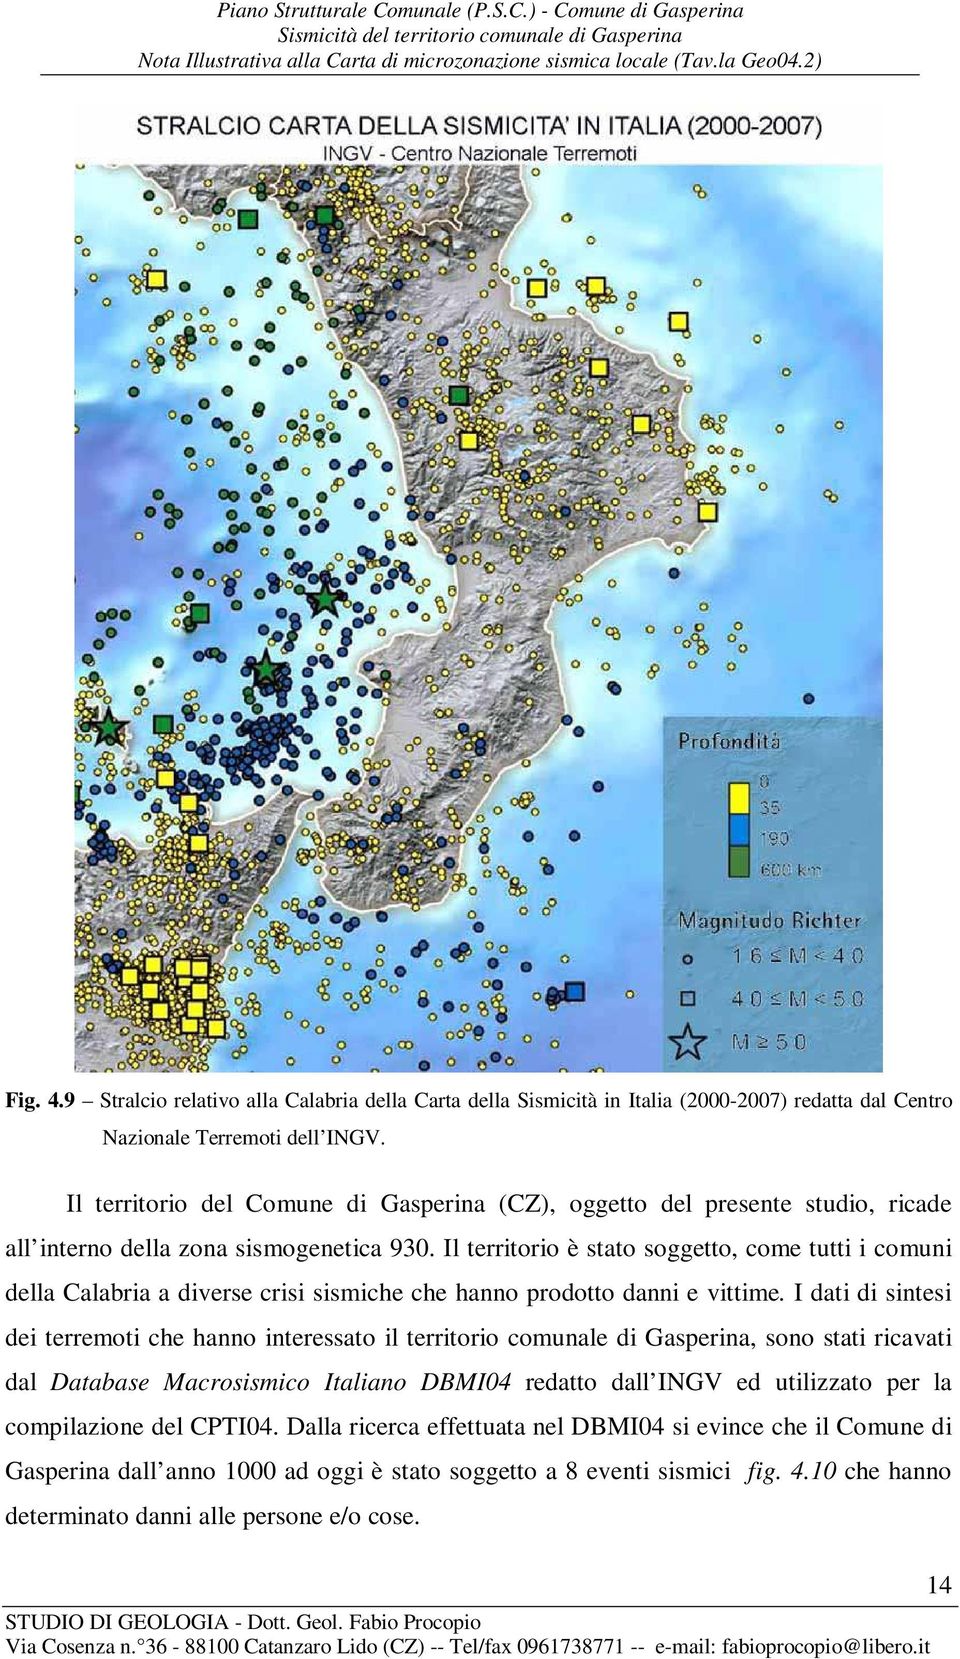 Il territorio è stato soggetto, come tutti i comuni della Calabria a diverse crisi sismiche che hanno prodotto danni e vittime.